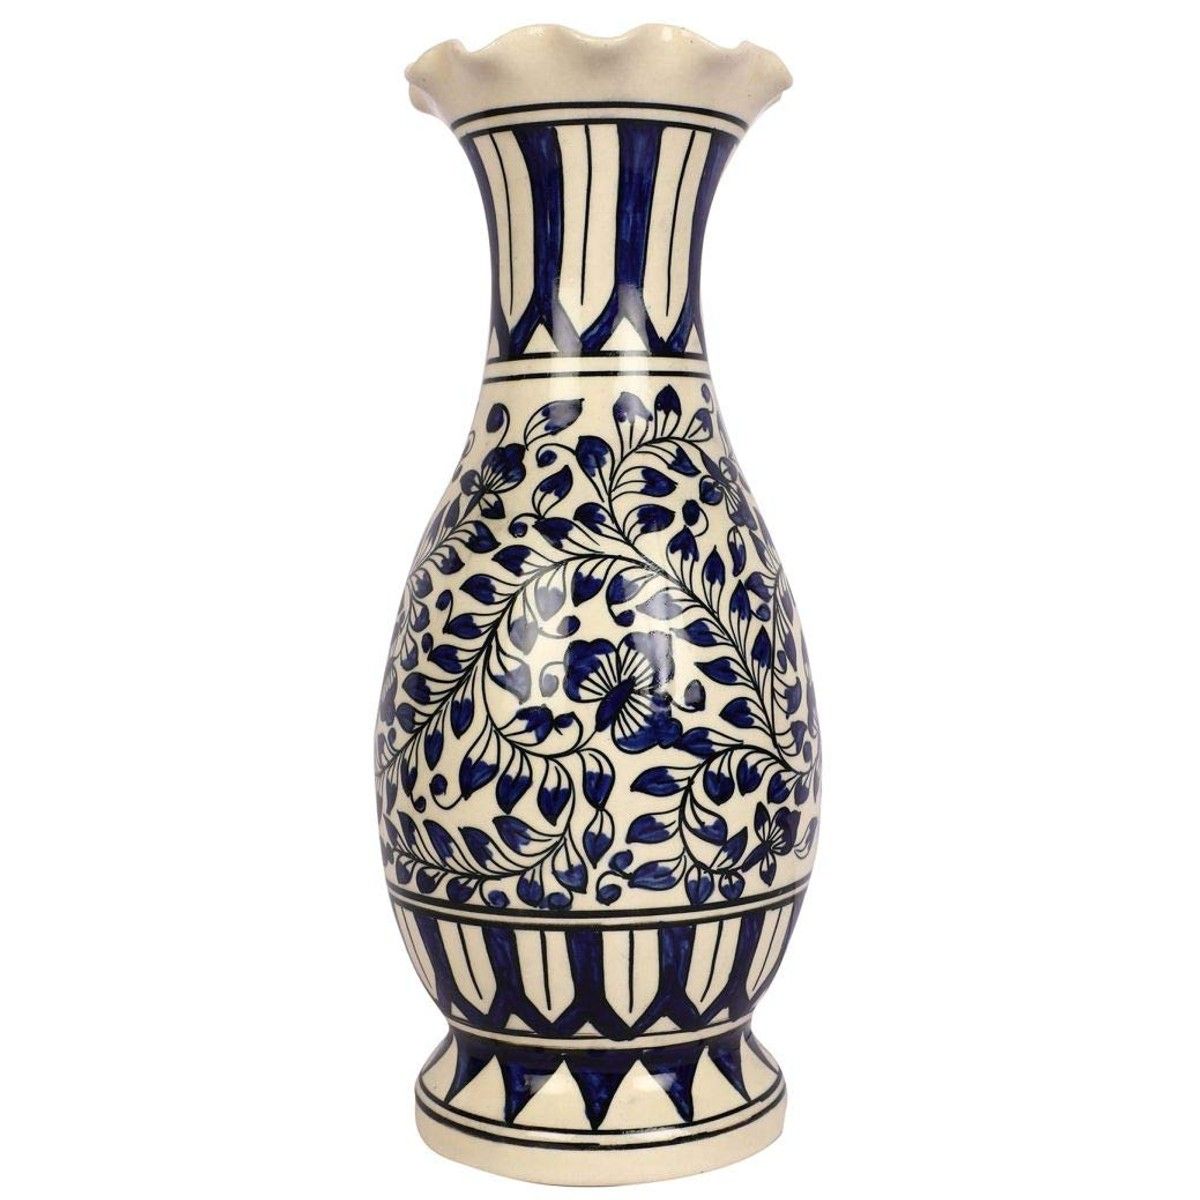 Ceramic Flower Vase for Living Room